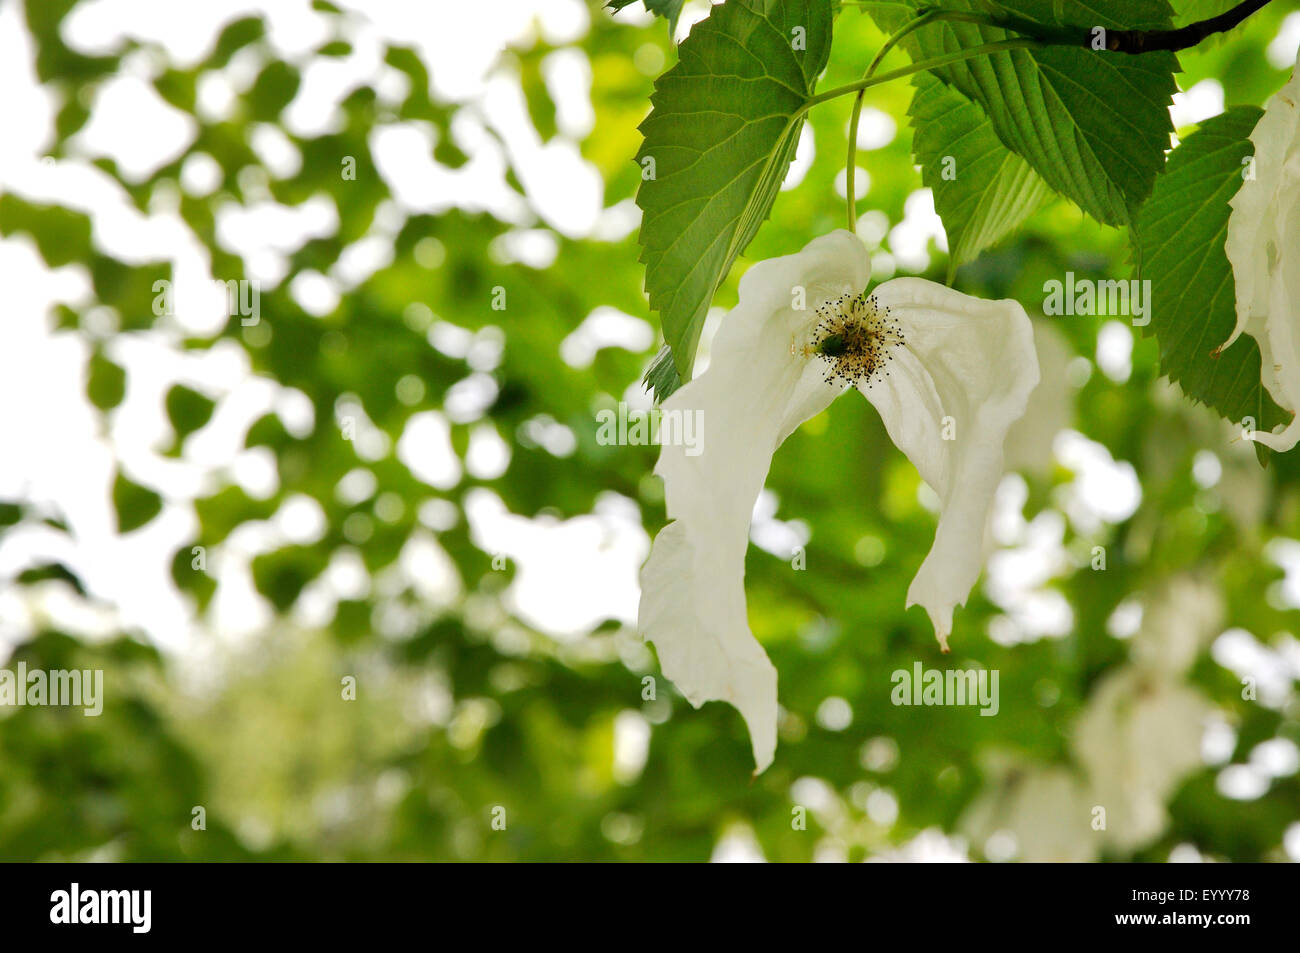 pocket-handkerchief tree (Davidia involucrata), inflorescence Stock Photo